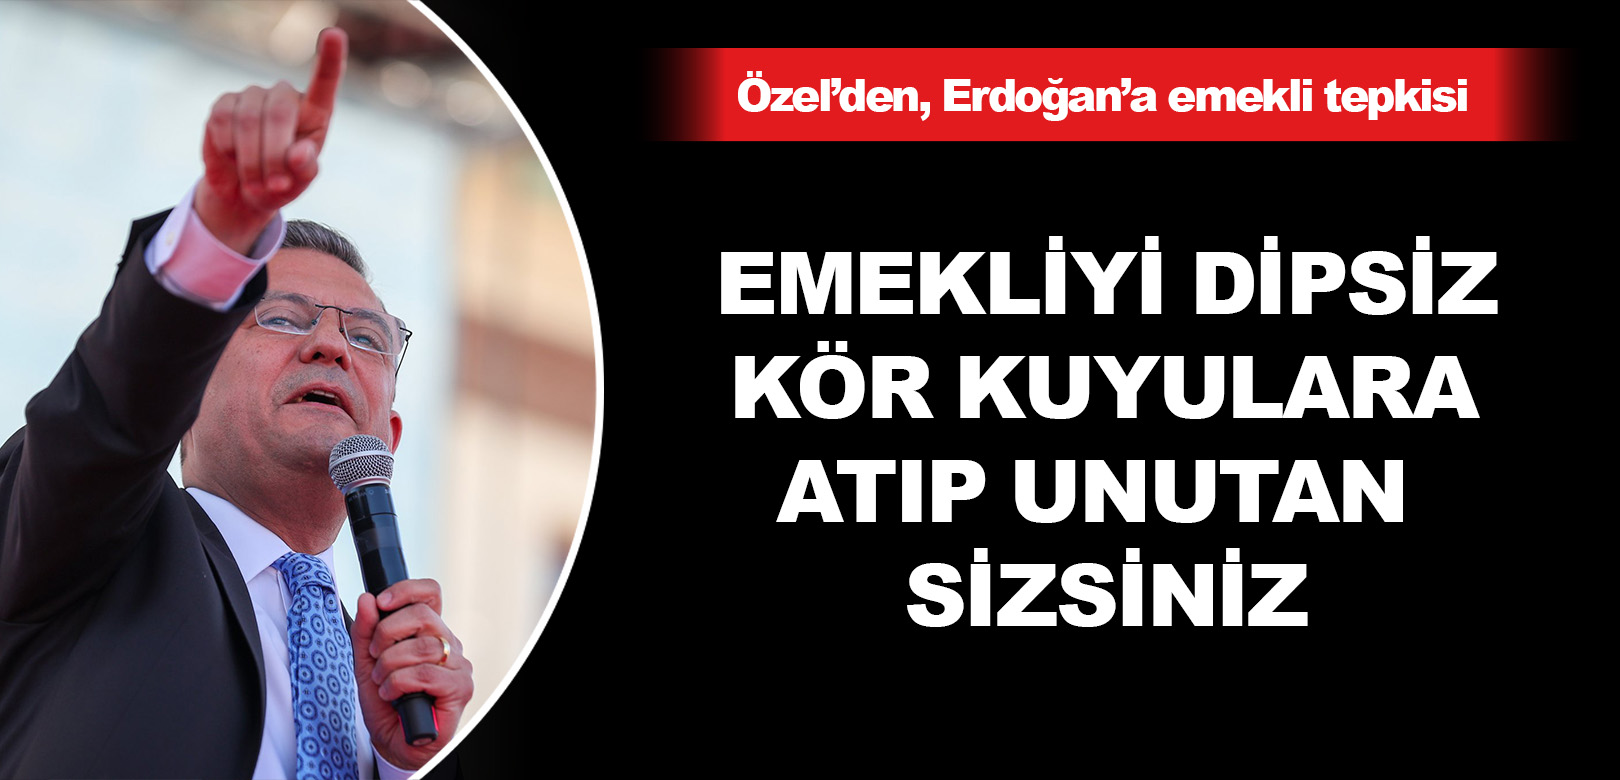 Özel’den Erdoğan’a emekli tepkisi: Emekliyi dipsiz kör kuyulara atıp unutan sizsiniz